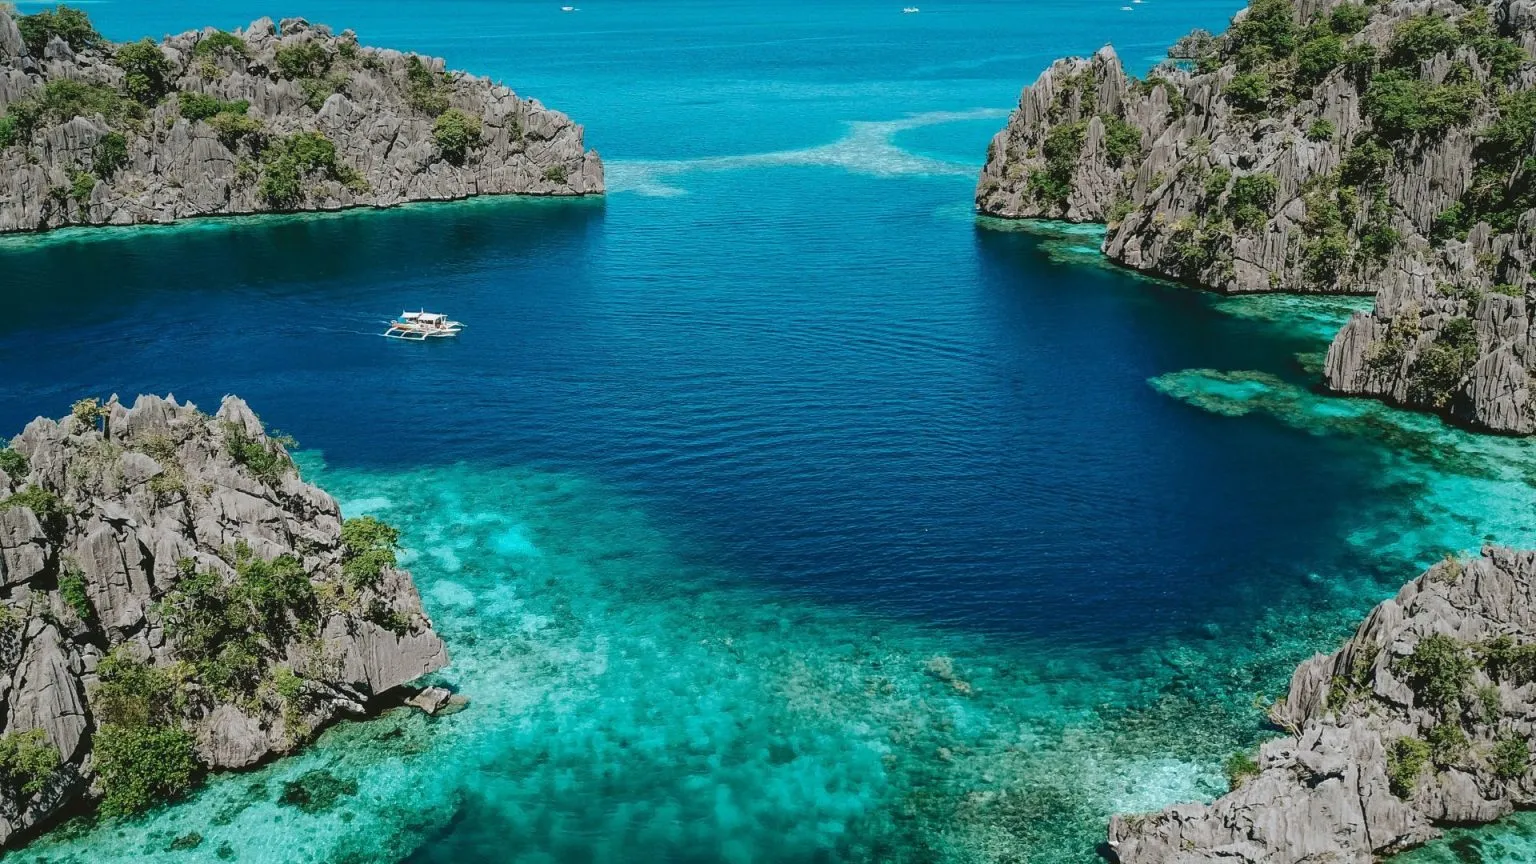 đảo Coron hướng dẫn du lịch philippines Tín dụng hình ảnh: John Hernandez / Unsplash Nổi tiếng là một trong những điểm lặn tốt nhất trên thế giới, đảo Coron này thực sự là một thiên đường xanh tươi. Với màu xanh ngọc lam và làn nước trong xanh hoàng gia, hòn đảo cao chót vót này nằm ngay trên đỉnh của huyện đảo Palawan, phần cực tây của quần đảo Philippines. Do sự hiện diện của những mảnh vụn phức tạp như vậy ở đây, hòn đảo này nổi tiếng với hoạt động lặn cũng như đi bộ đường dài.